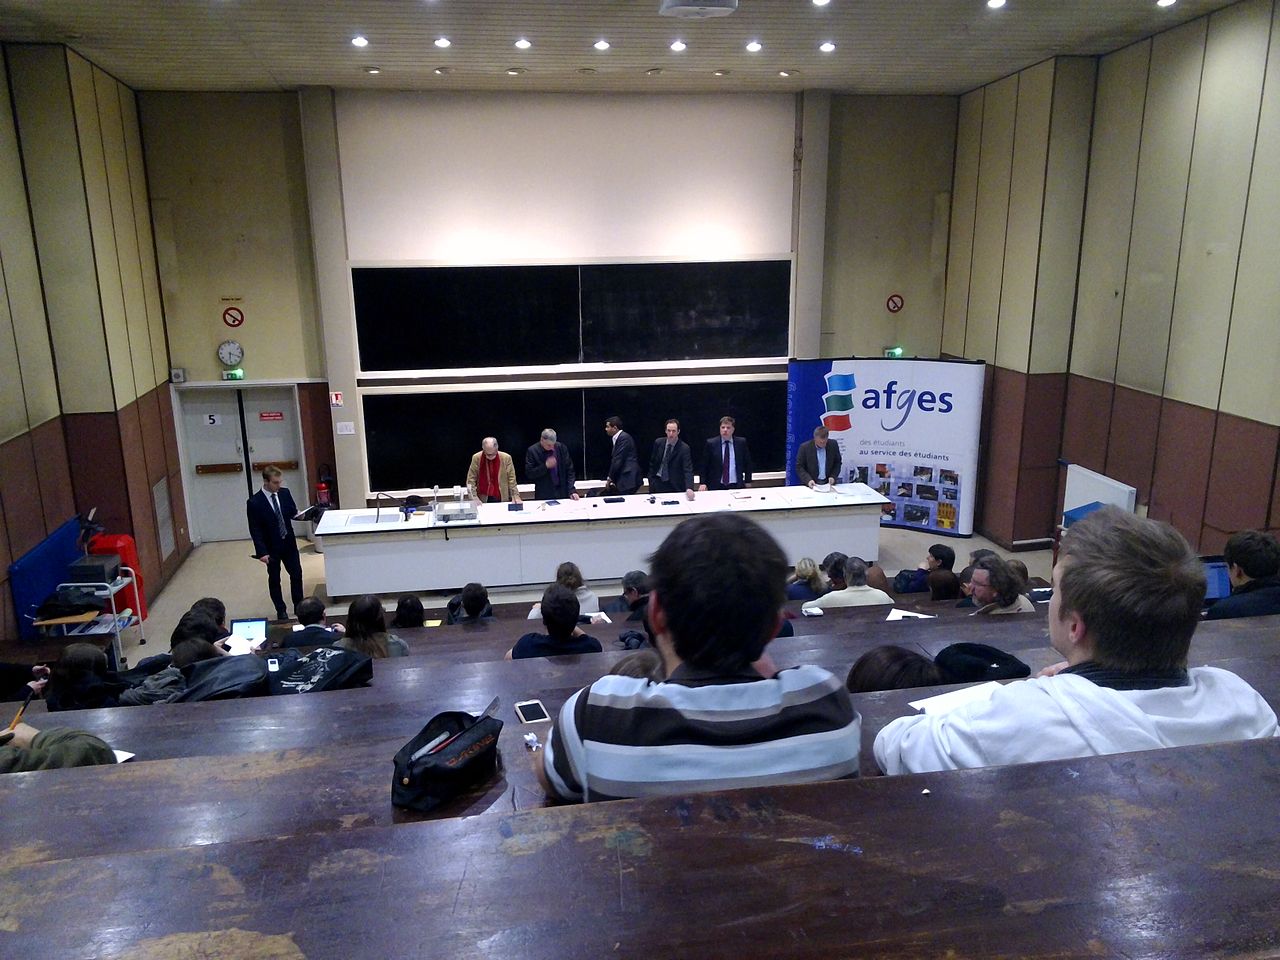 Débat sur la Collectivité territoriale d'Alsace organisé par l'AFGES le 28 mars 2013 à l'Université de Strasbourg